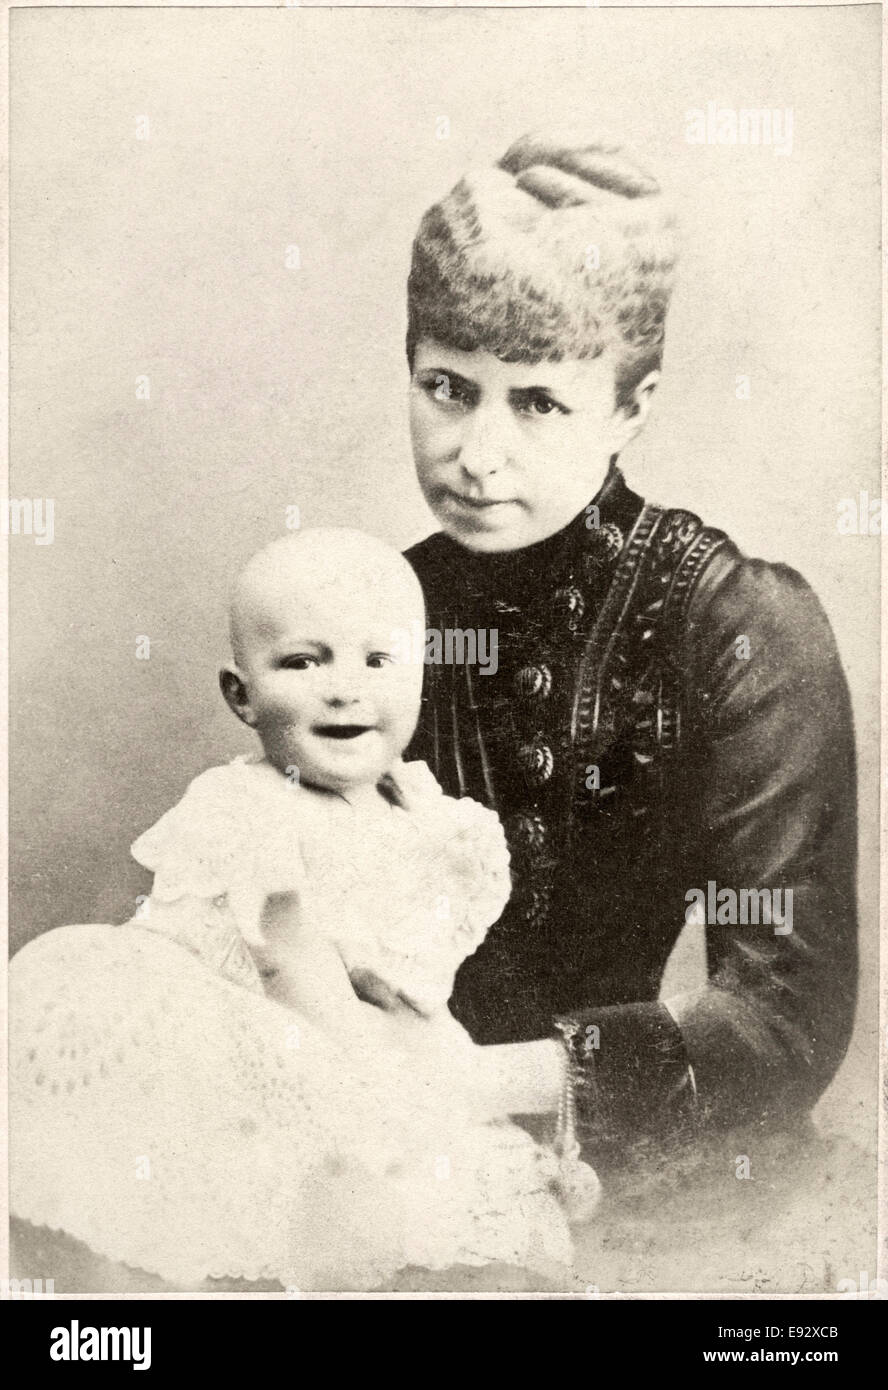 Alfonso XIII (1886-1941), König von Spanien, und Mutter, Maria Christina von Österreich, Königin Regent (1858-1929), Porträt, Eiweiss Kabinett Karte, ca. 1886 Stockfoto